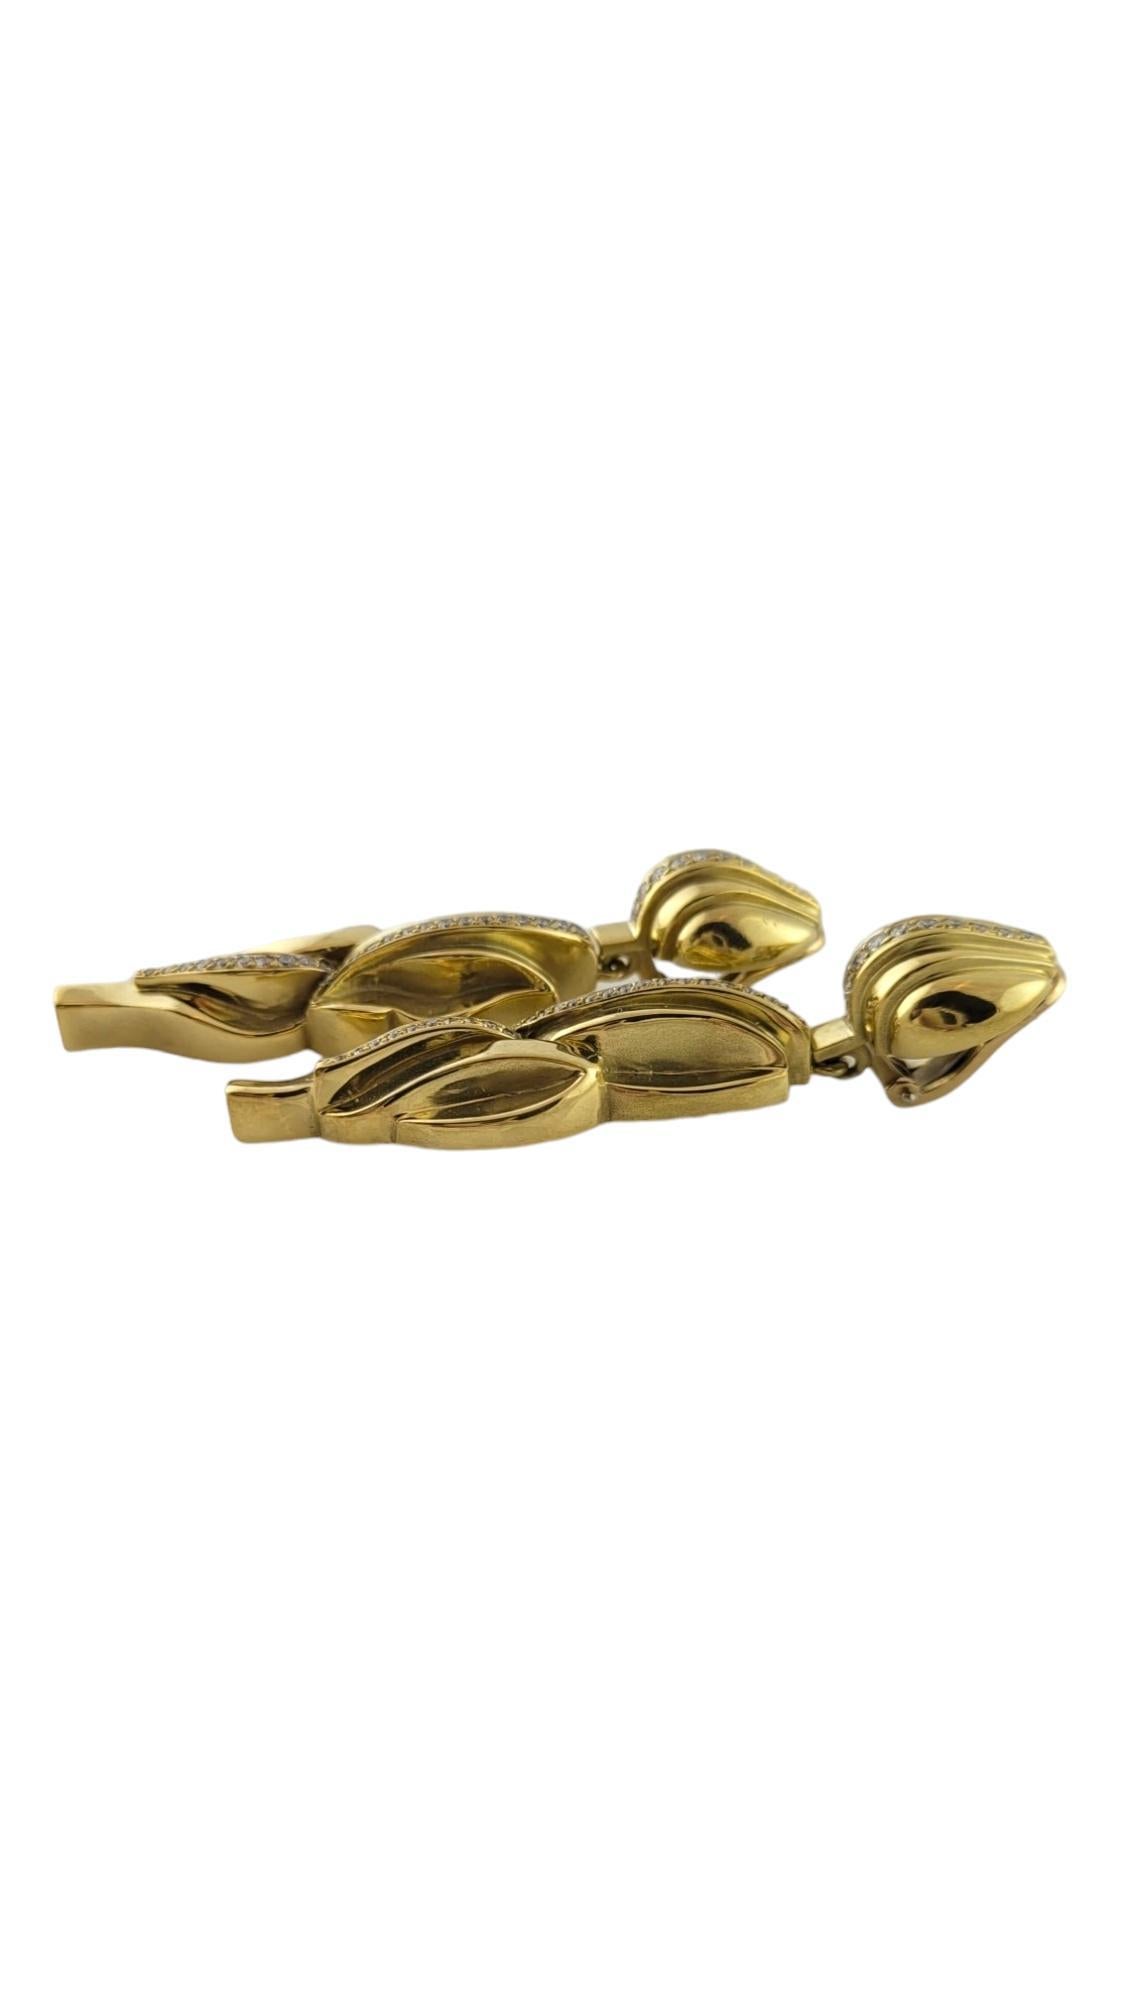 1983 Boucles d'oreilles à pince en or jaune 18K avec diamants KIESELSTEIN-CORD

Ces magnifiques boucles d'oreilles sont serties dans de l'or jaune 18 carats avec la finition mate caractéristique de KIESELSTEIN-CORD.

Cette paire de boucles